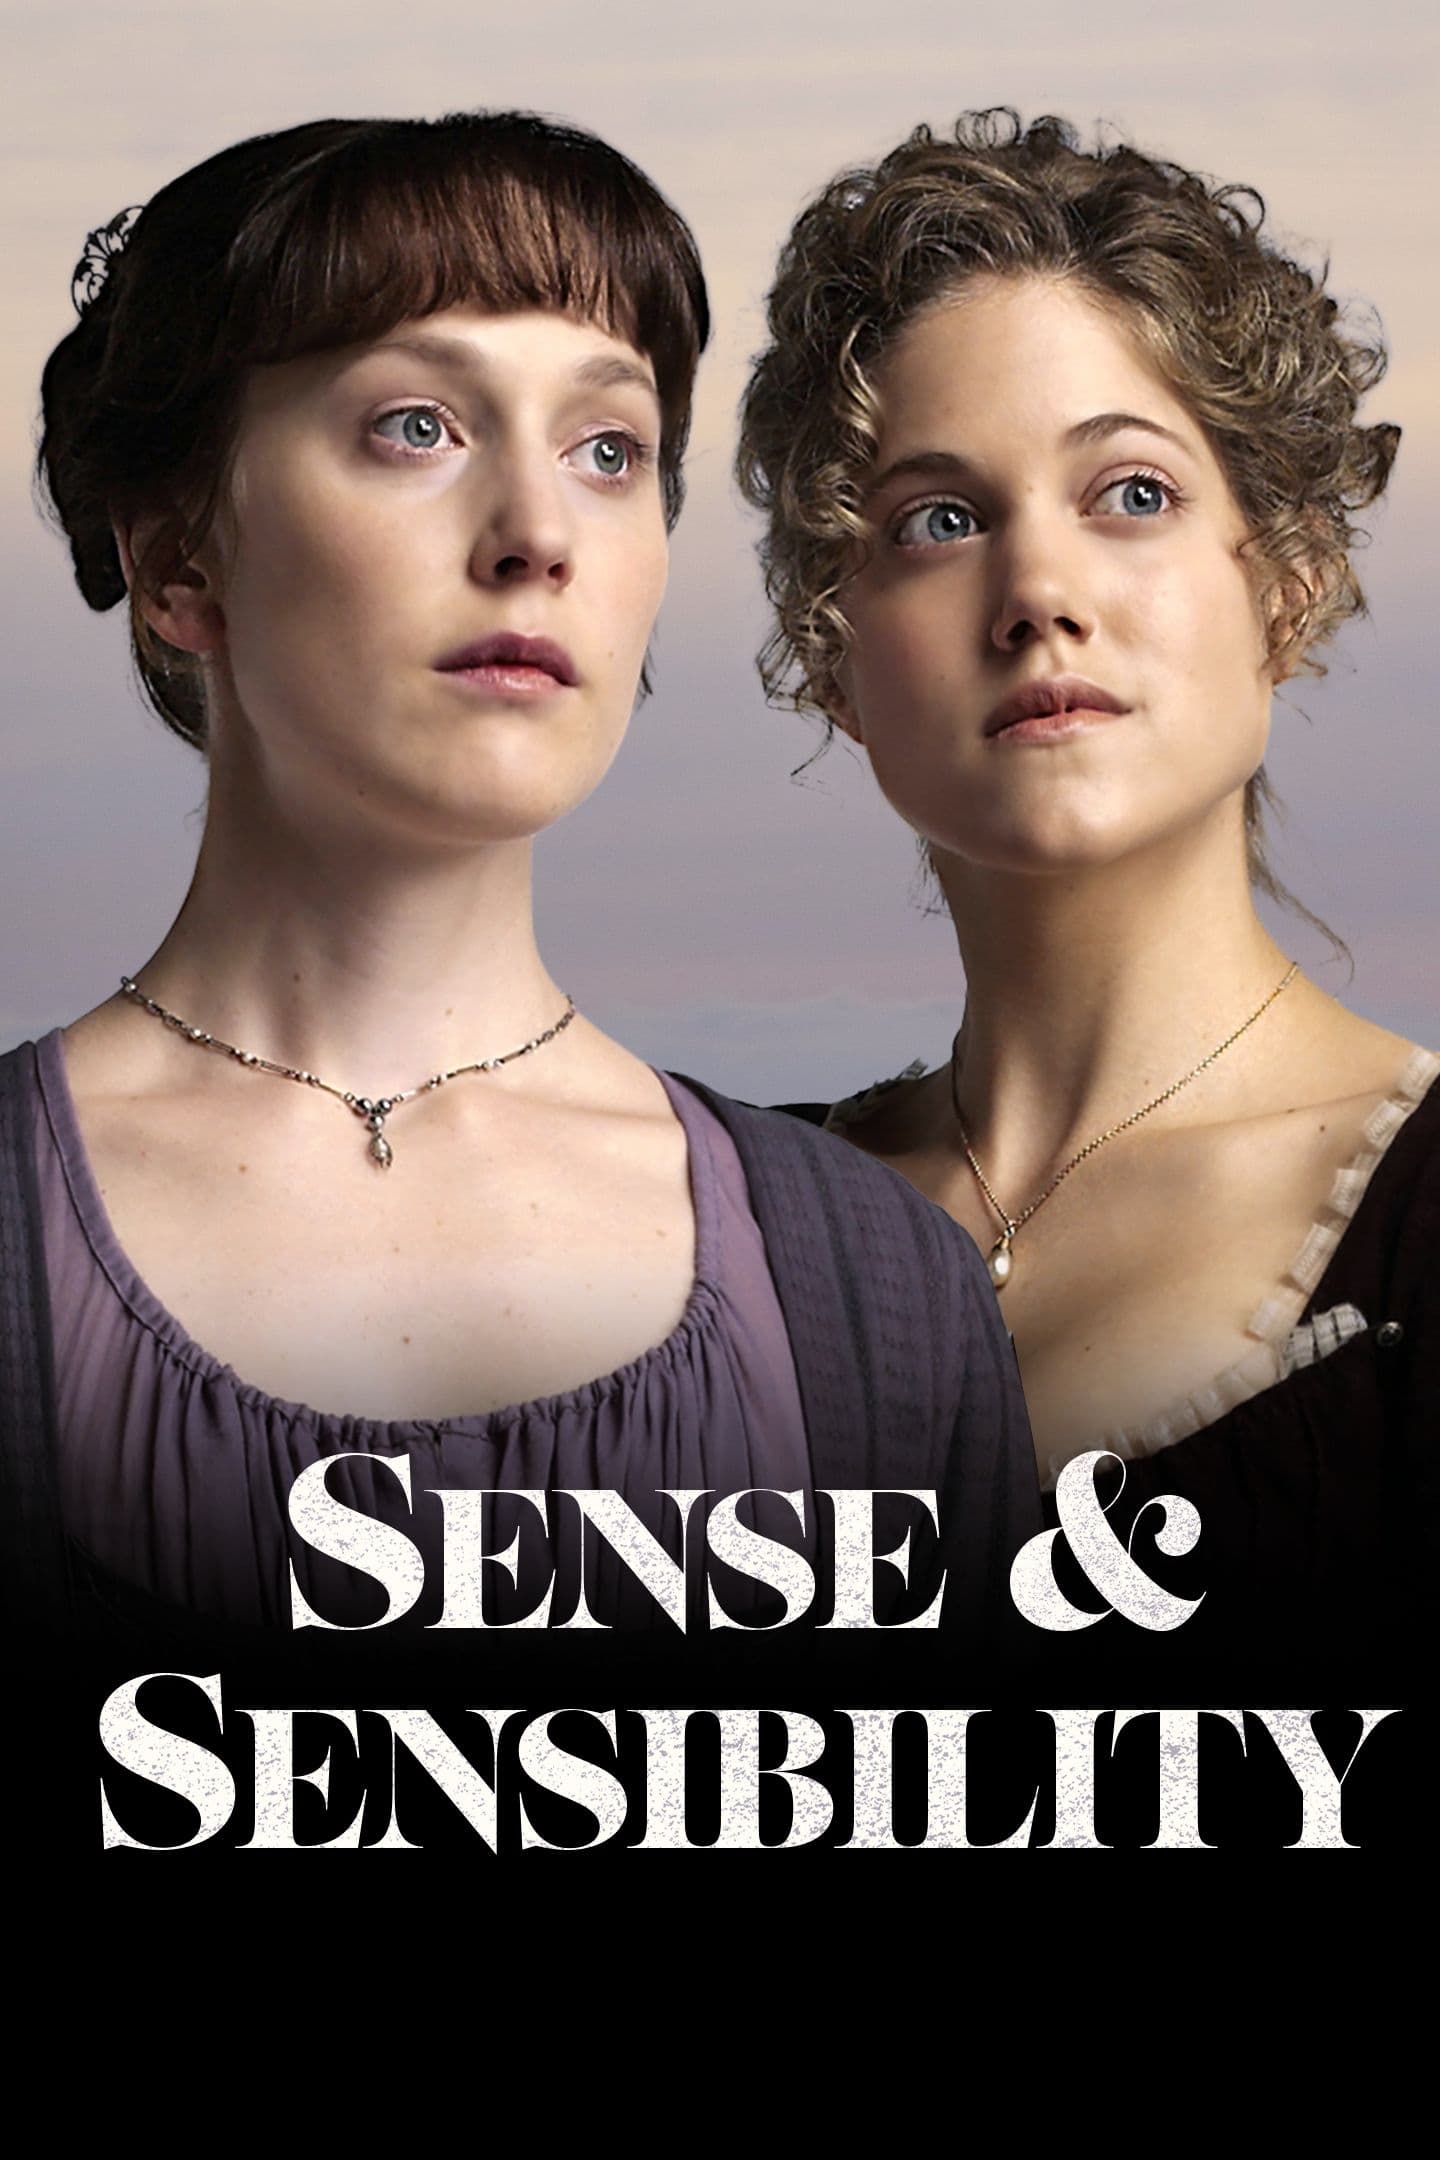 Sentido y sensibilidad (2008)